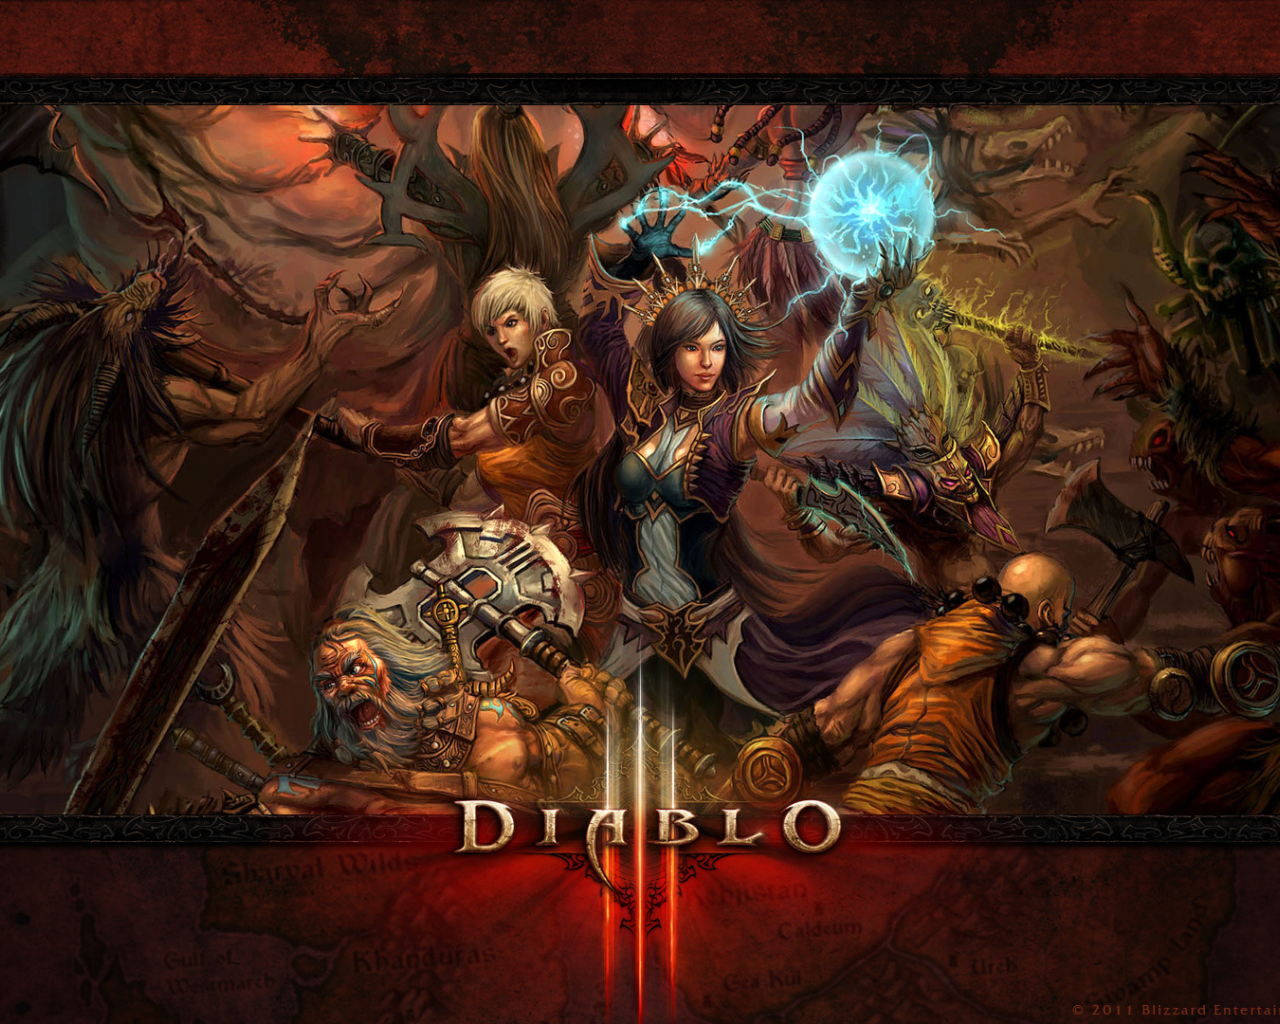  Diablo III: герои используют свои способности